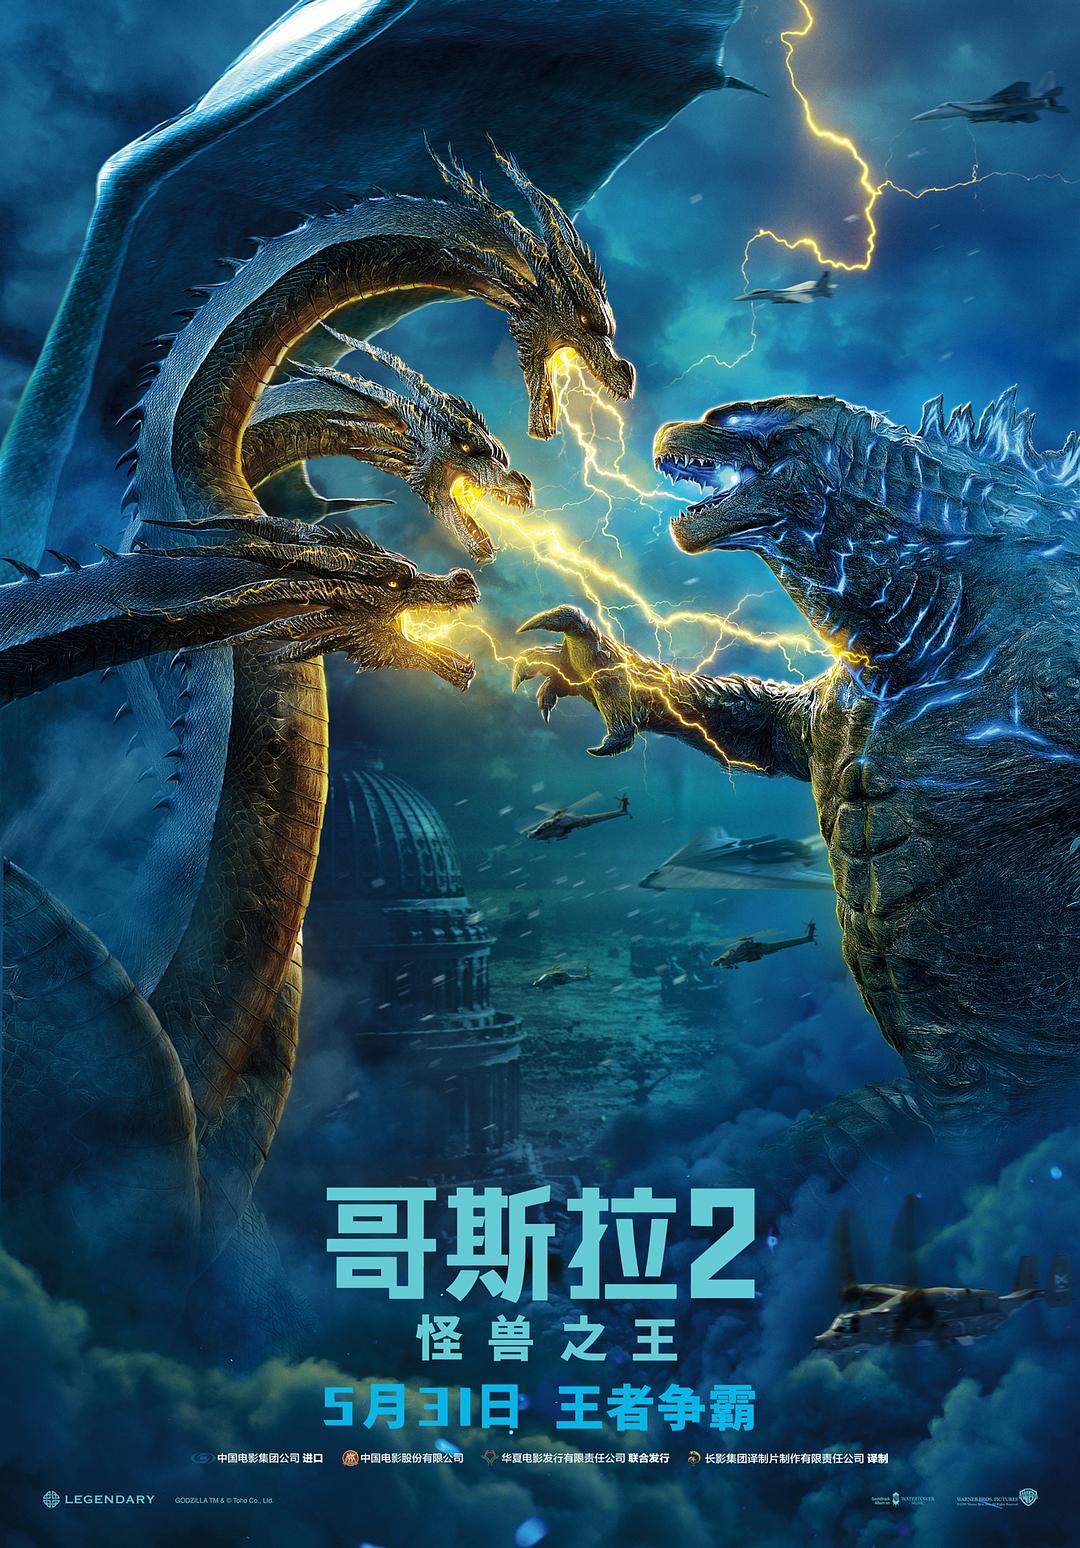 哥斯拉2:怪兽之王 Godzilla.King.of.the.Monsters.2019.2160p.BluRay.HEVC.TrueHD.7.1.Atmos-BHD 64.15GB-1.png